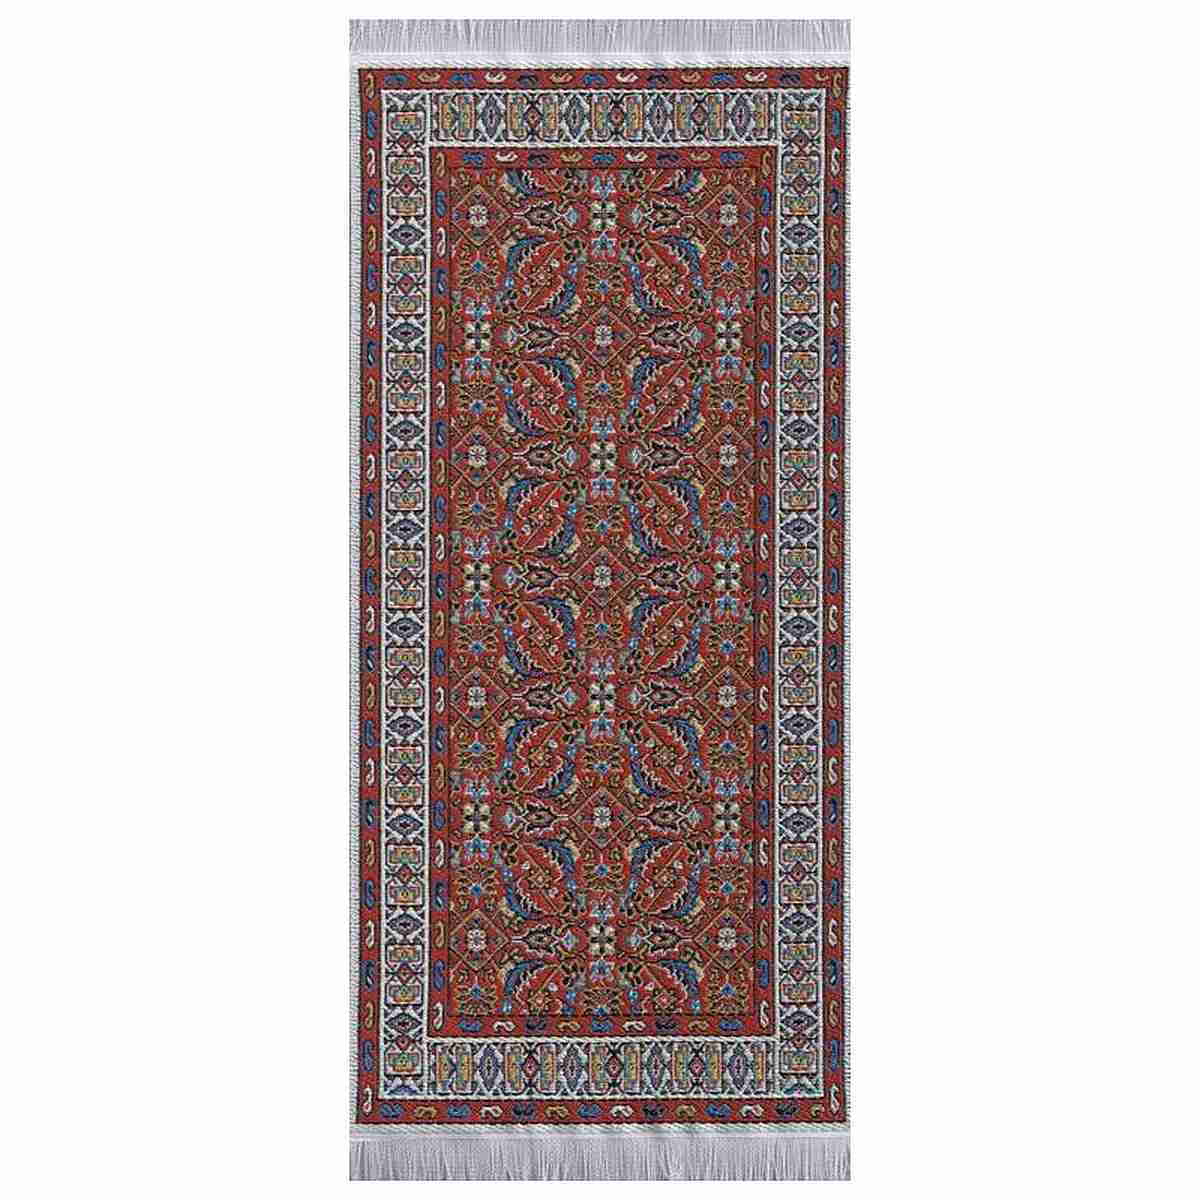 MEHMEH Oriental rug, woven, 10x16